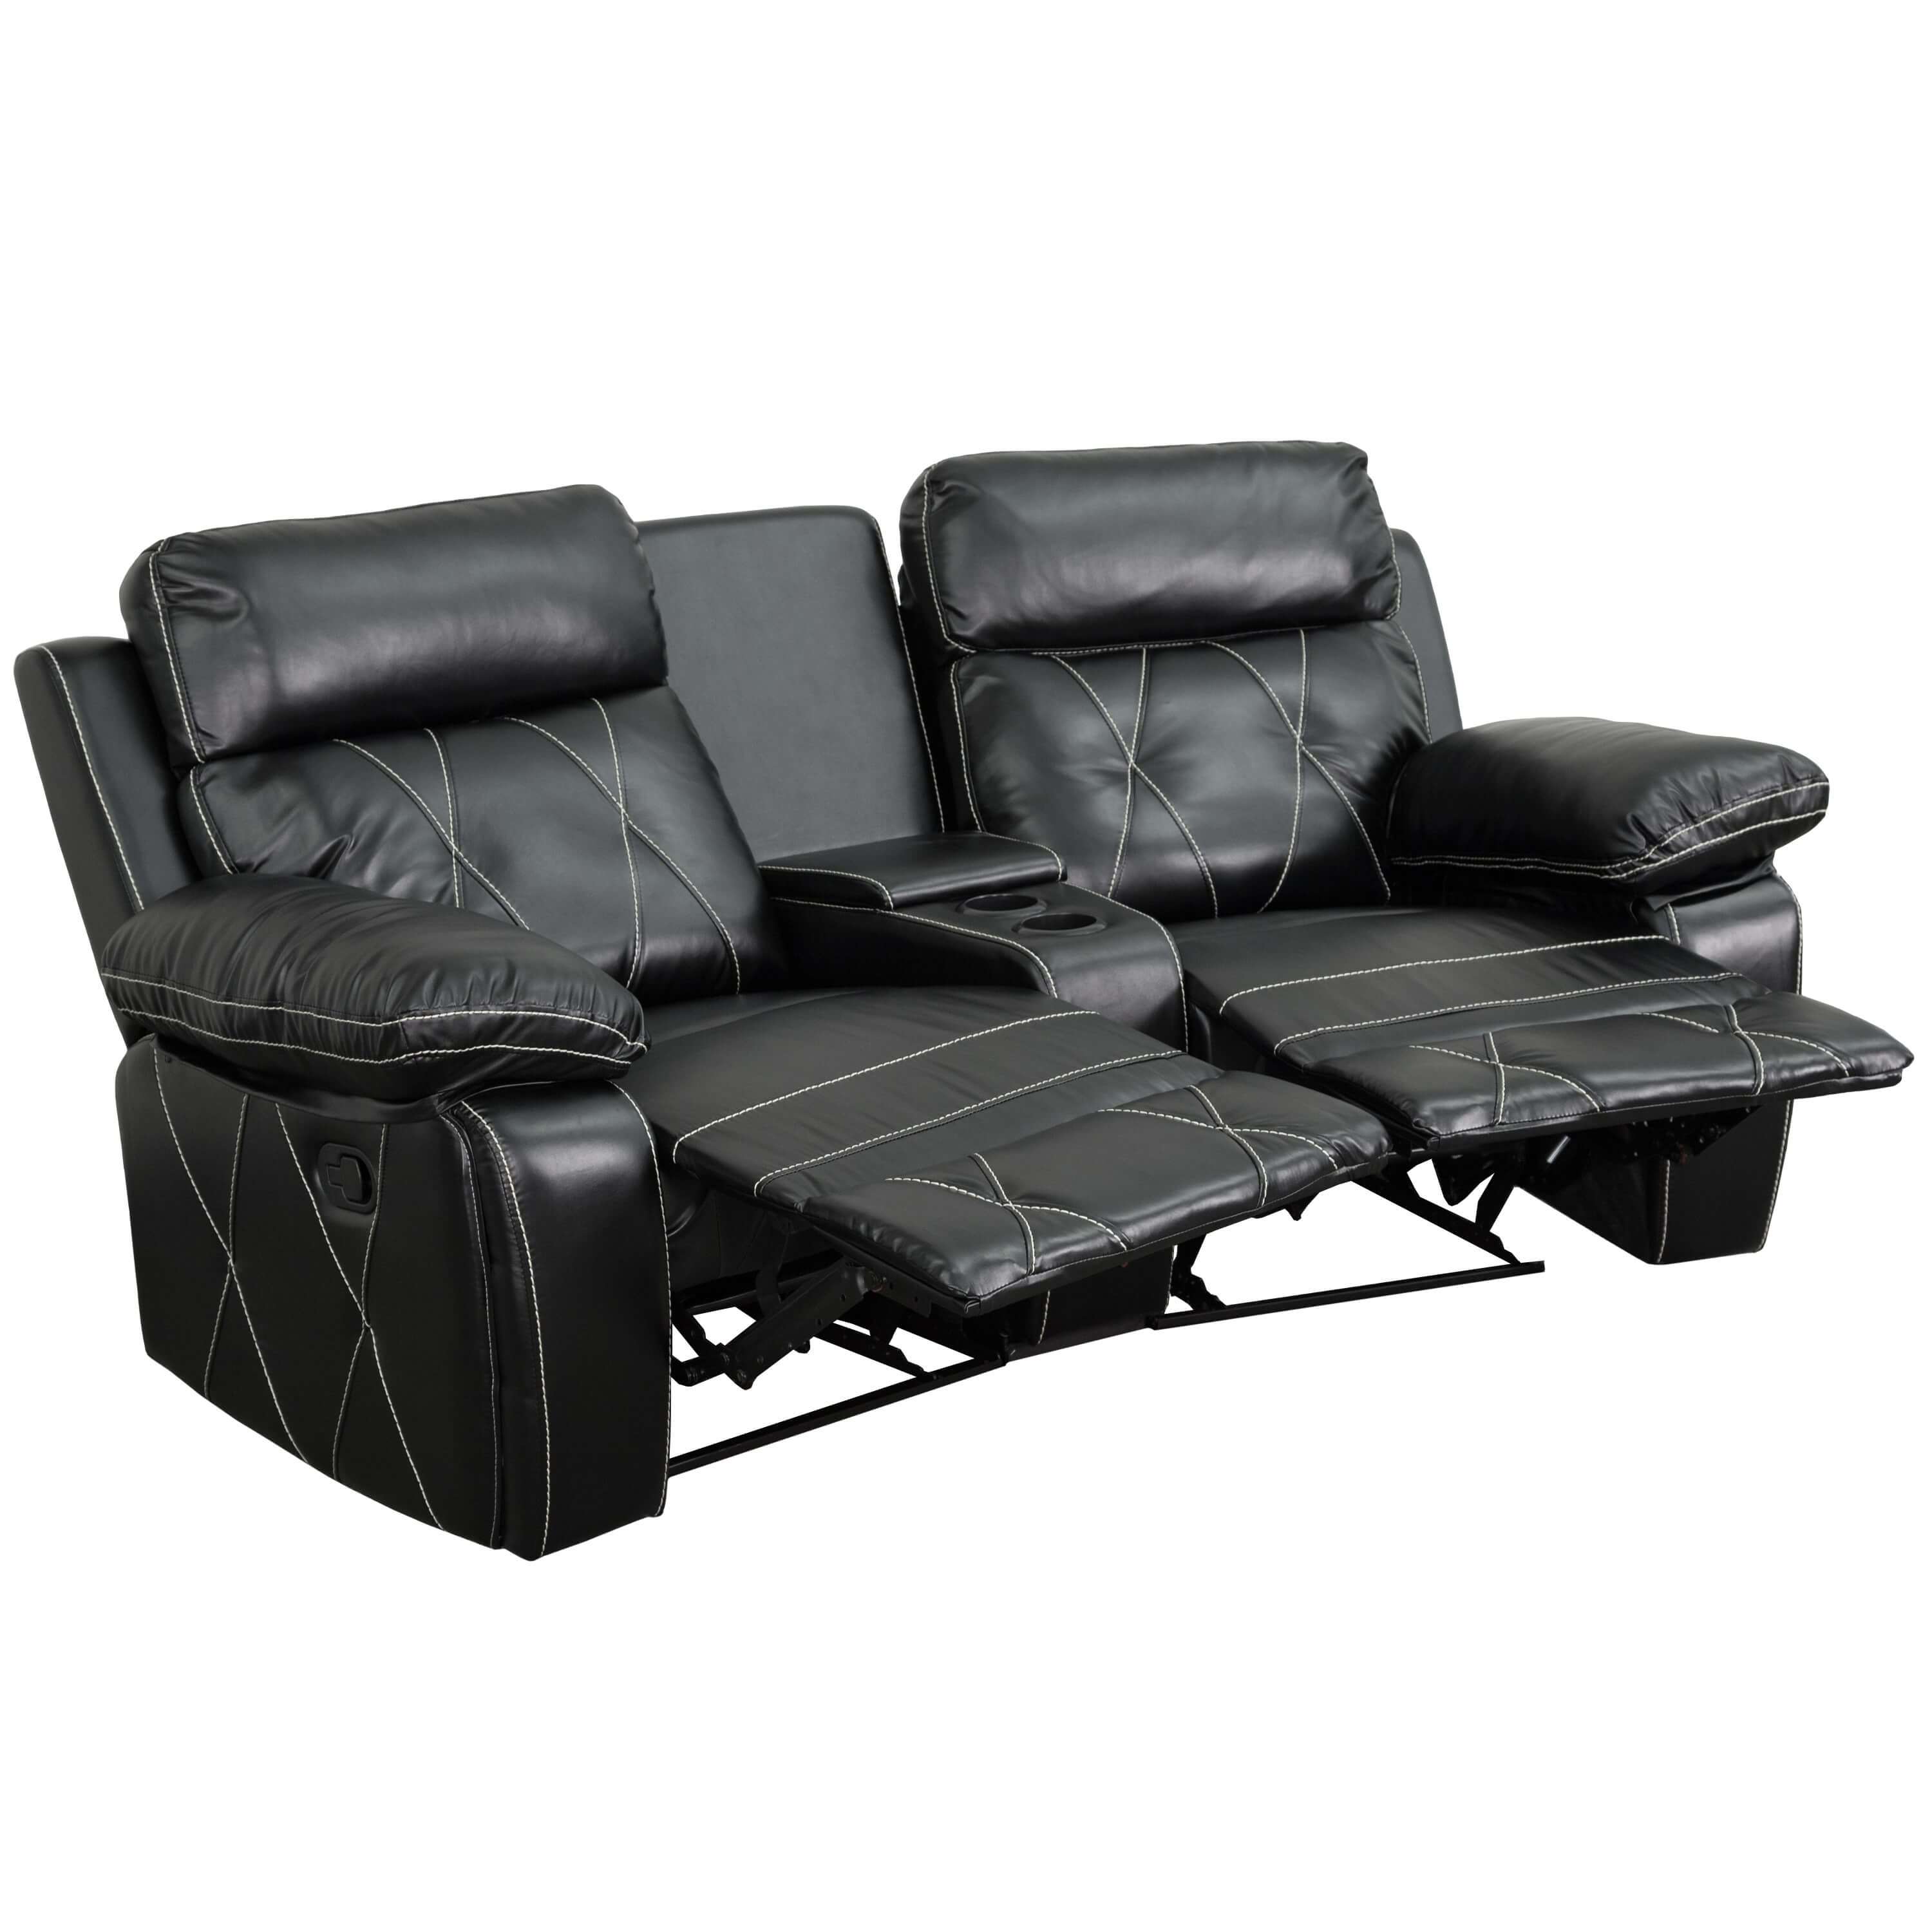 Home theater recliners CUB BT 70530 2 BK CV GG FLA